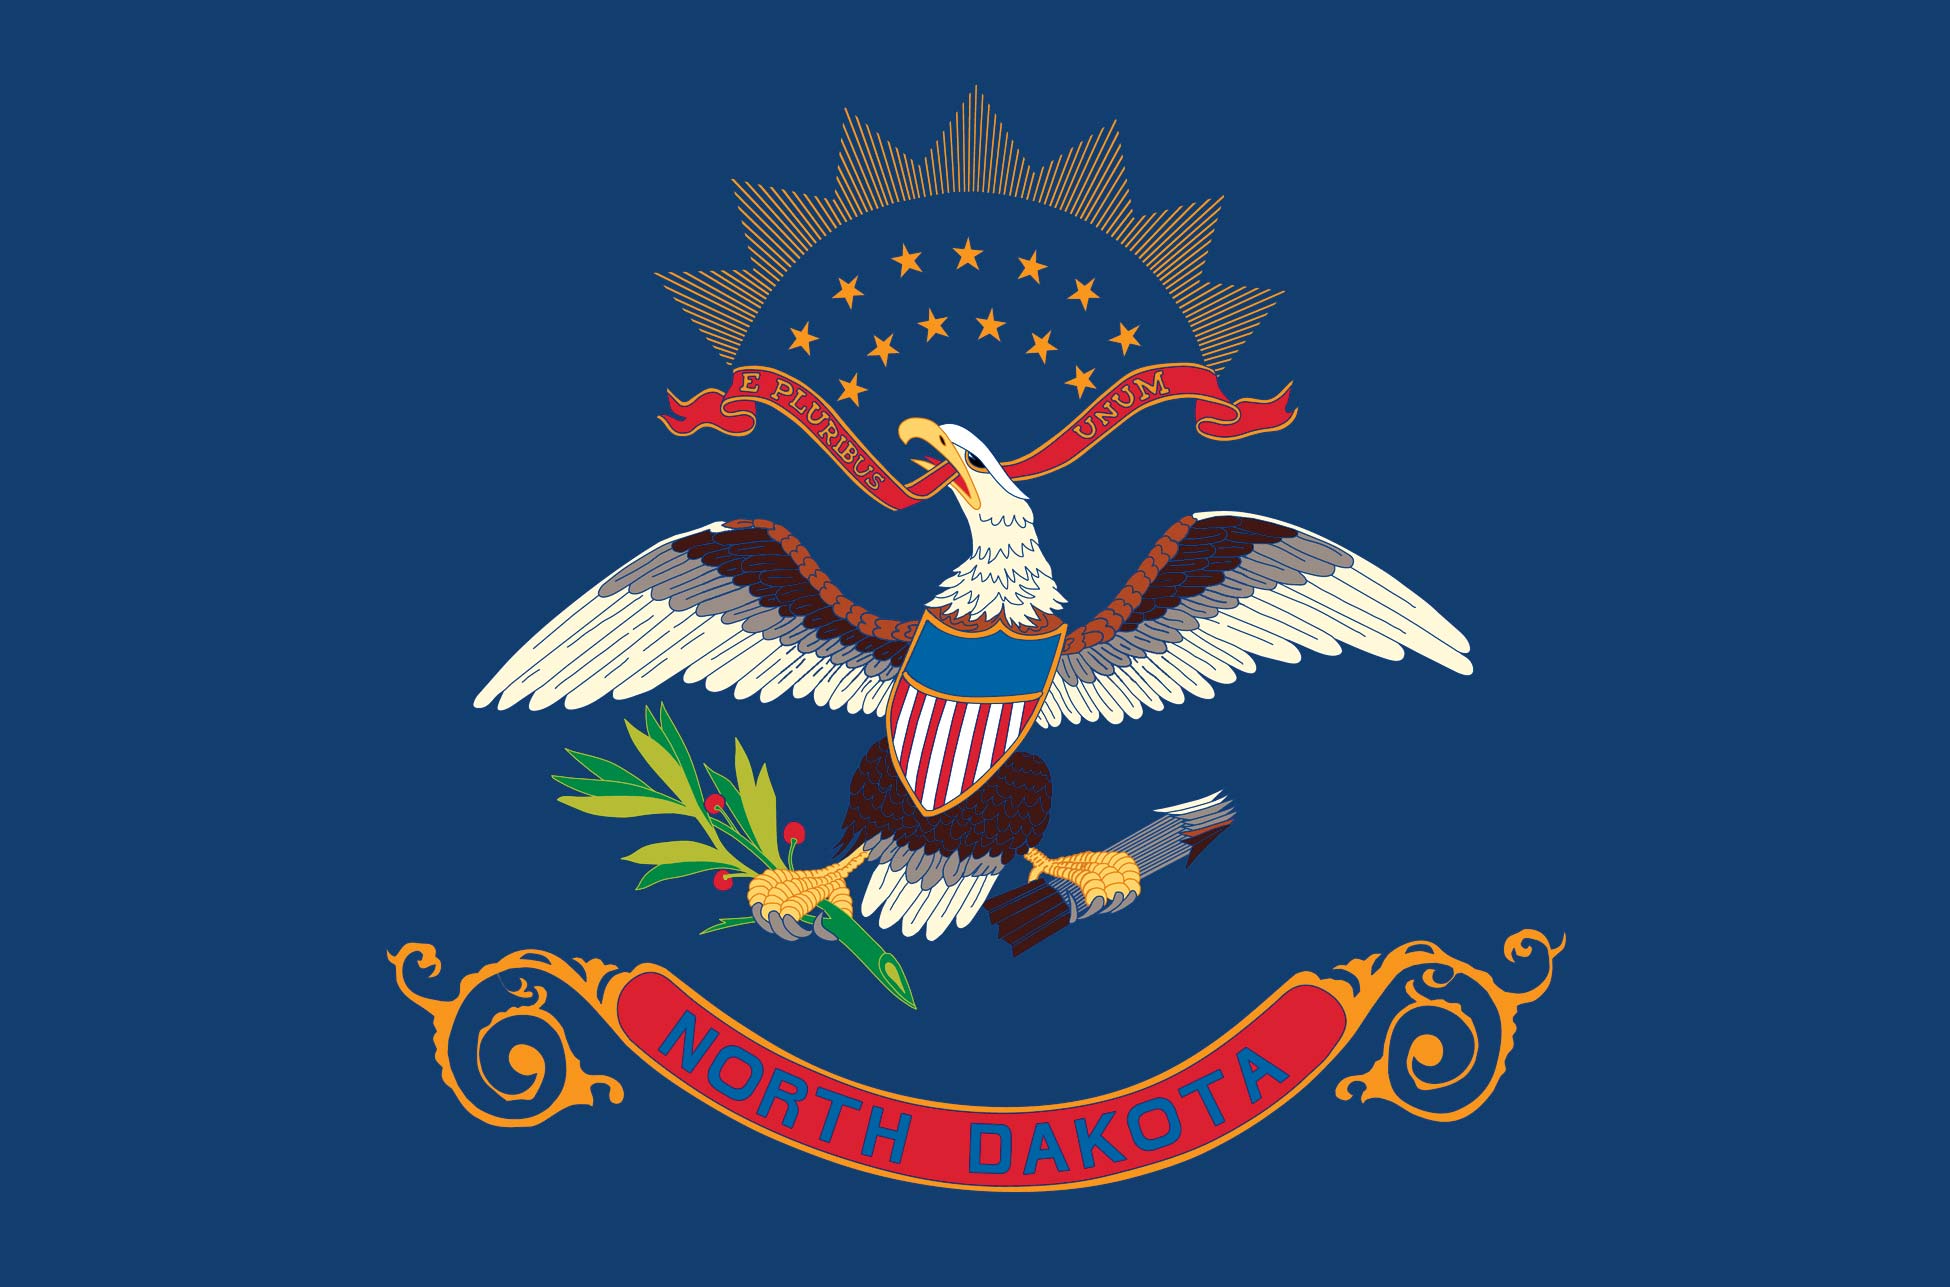 The North Dakota flag